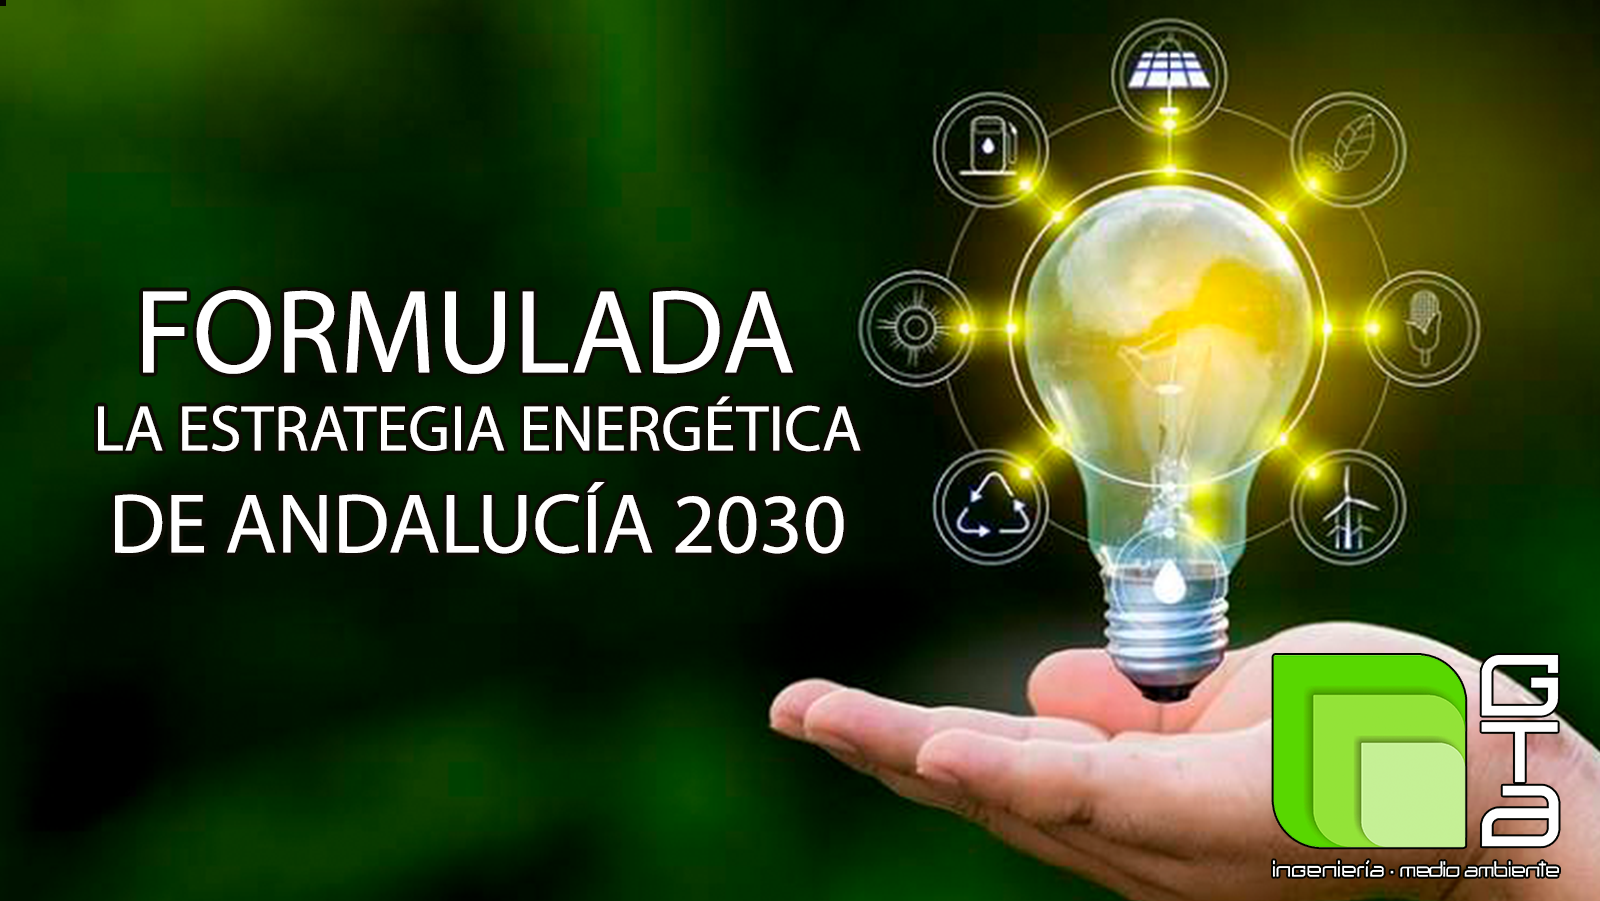 Avanzan los trámites para la aprobación de la Estrategia Energética de Andalucía 2030